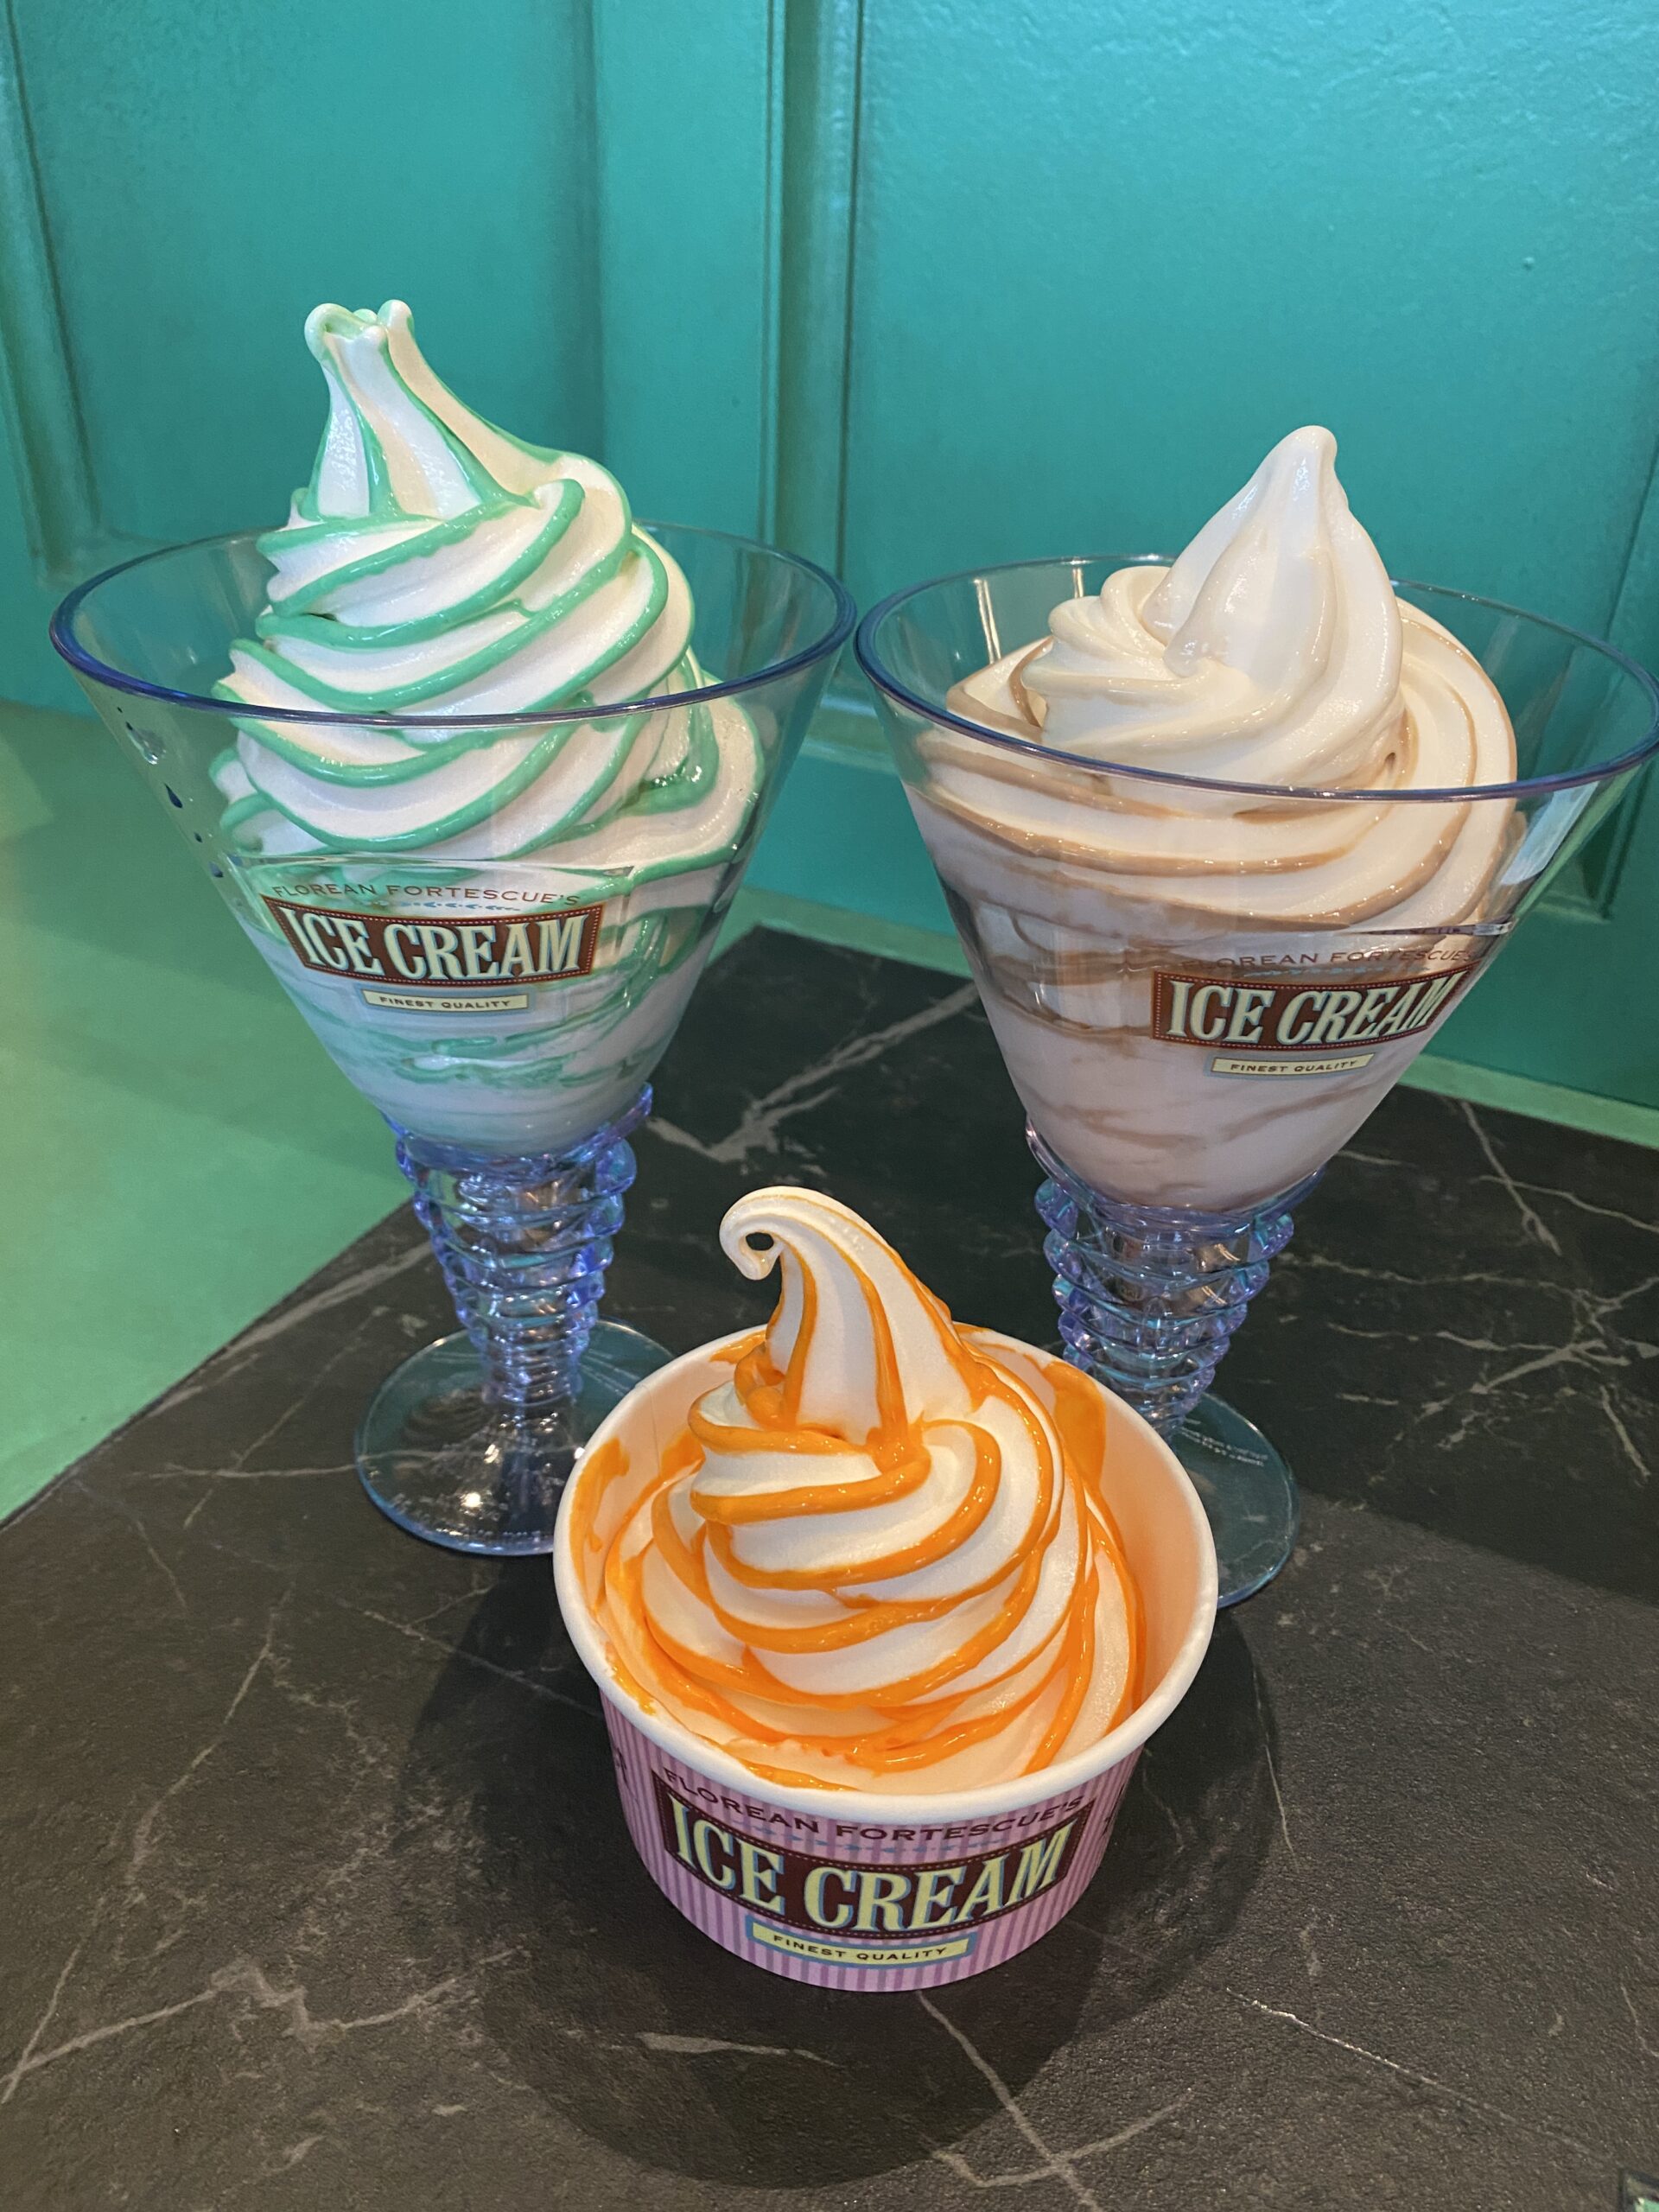 好萊塢環球影城在《哈利波特魔法世界》中開設了Florean Fortescue’s 冰淇淋專櫃提供 10 种特別的春夏软冰淇淋口味